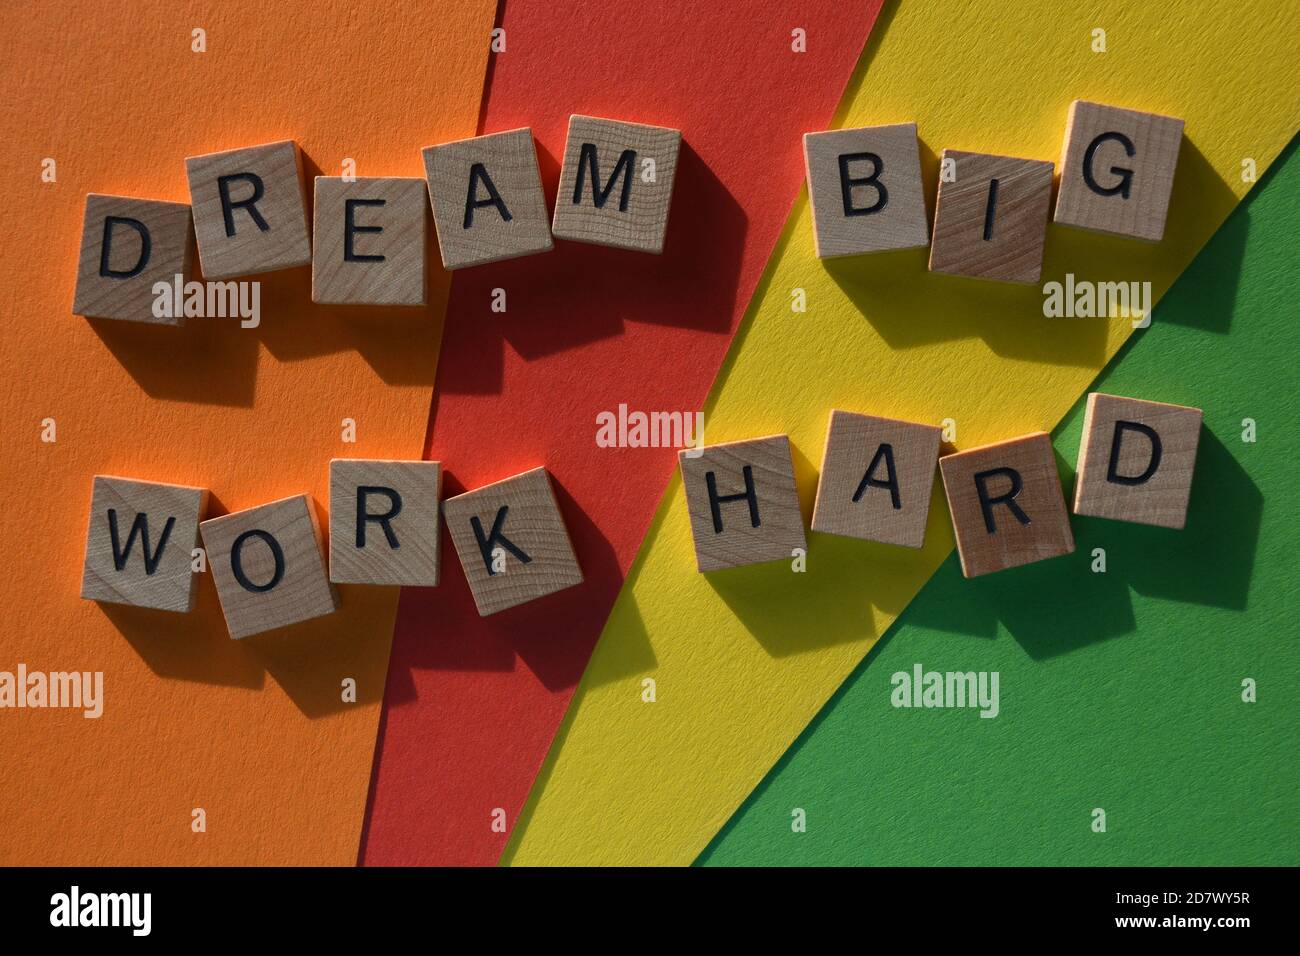 Dream Big, lavoro duro, parole in lettere alfabetiche in legno su sfondo colorato Foto Stock